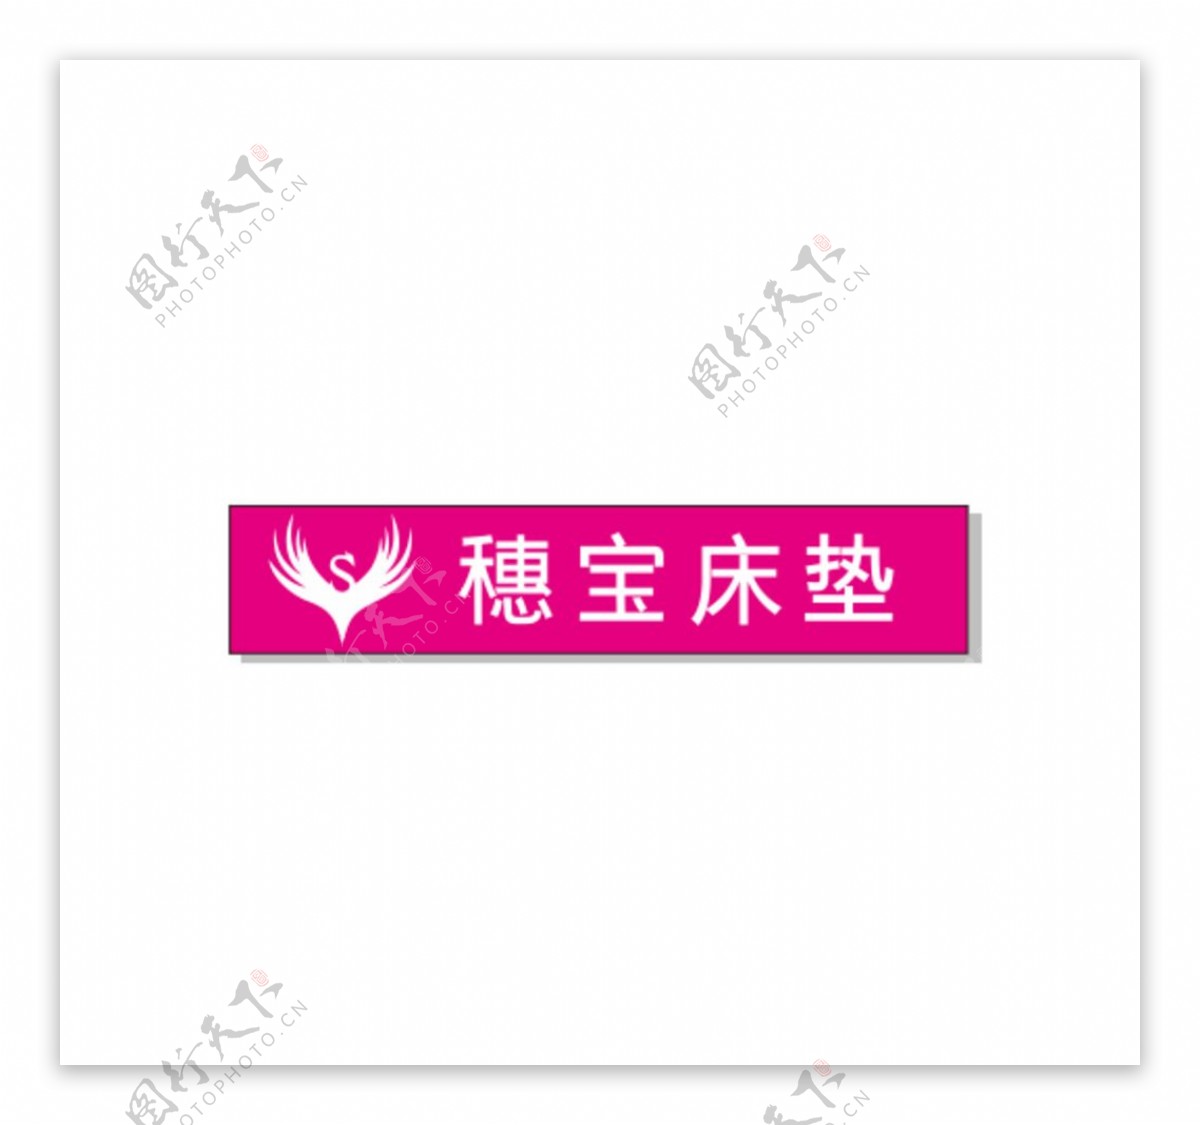 穗宝床垫logo